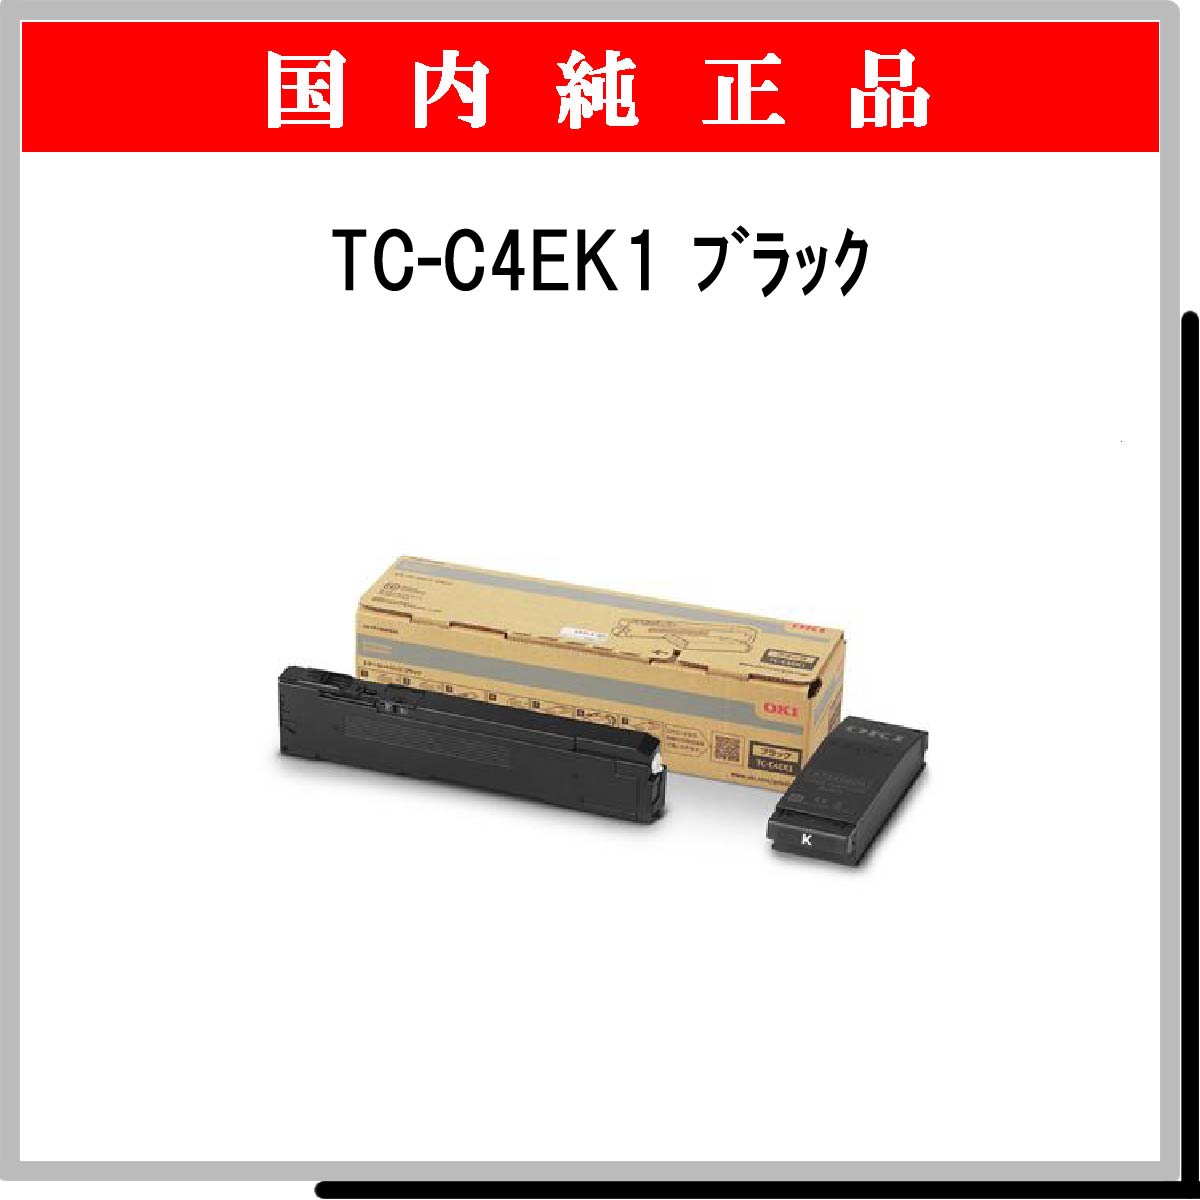 TC-C4EK1 純正